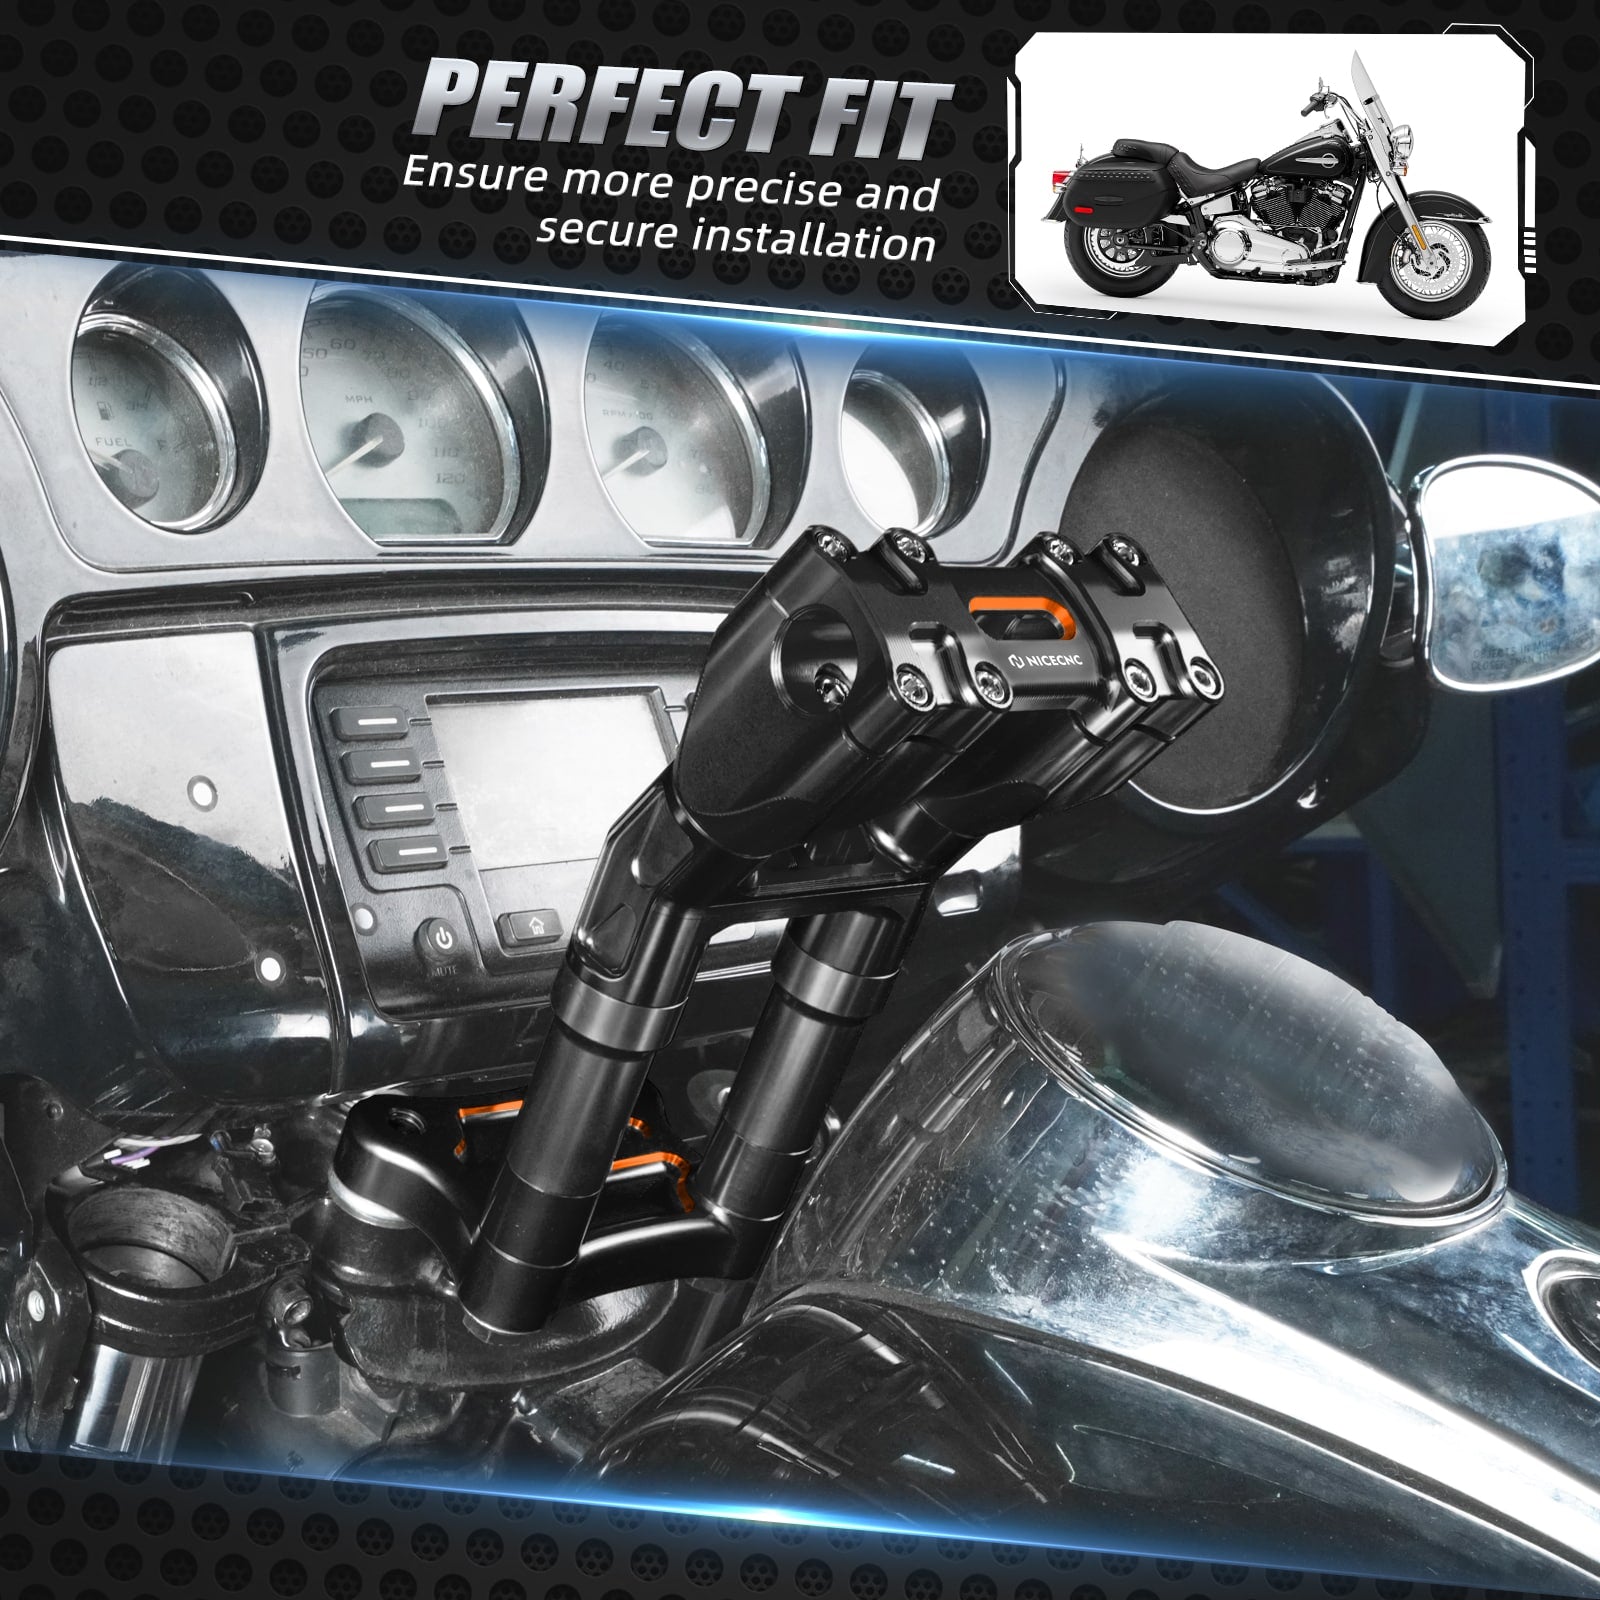 Kickback Isolated Riser 9" for  1" Handlebar For Most Harley Davidson Models